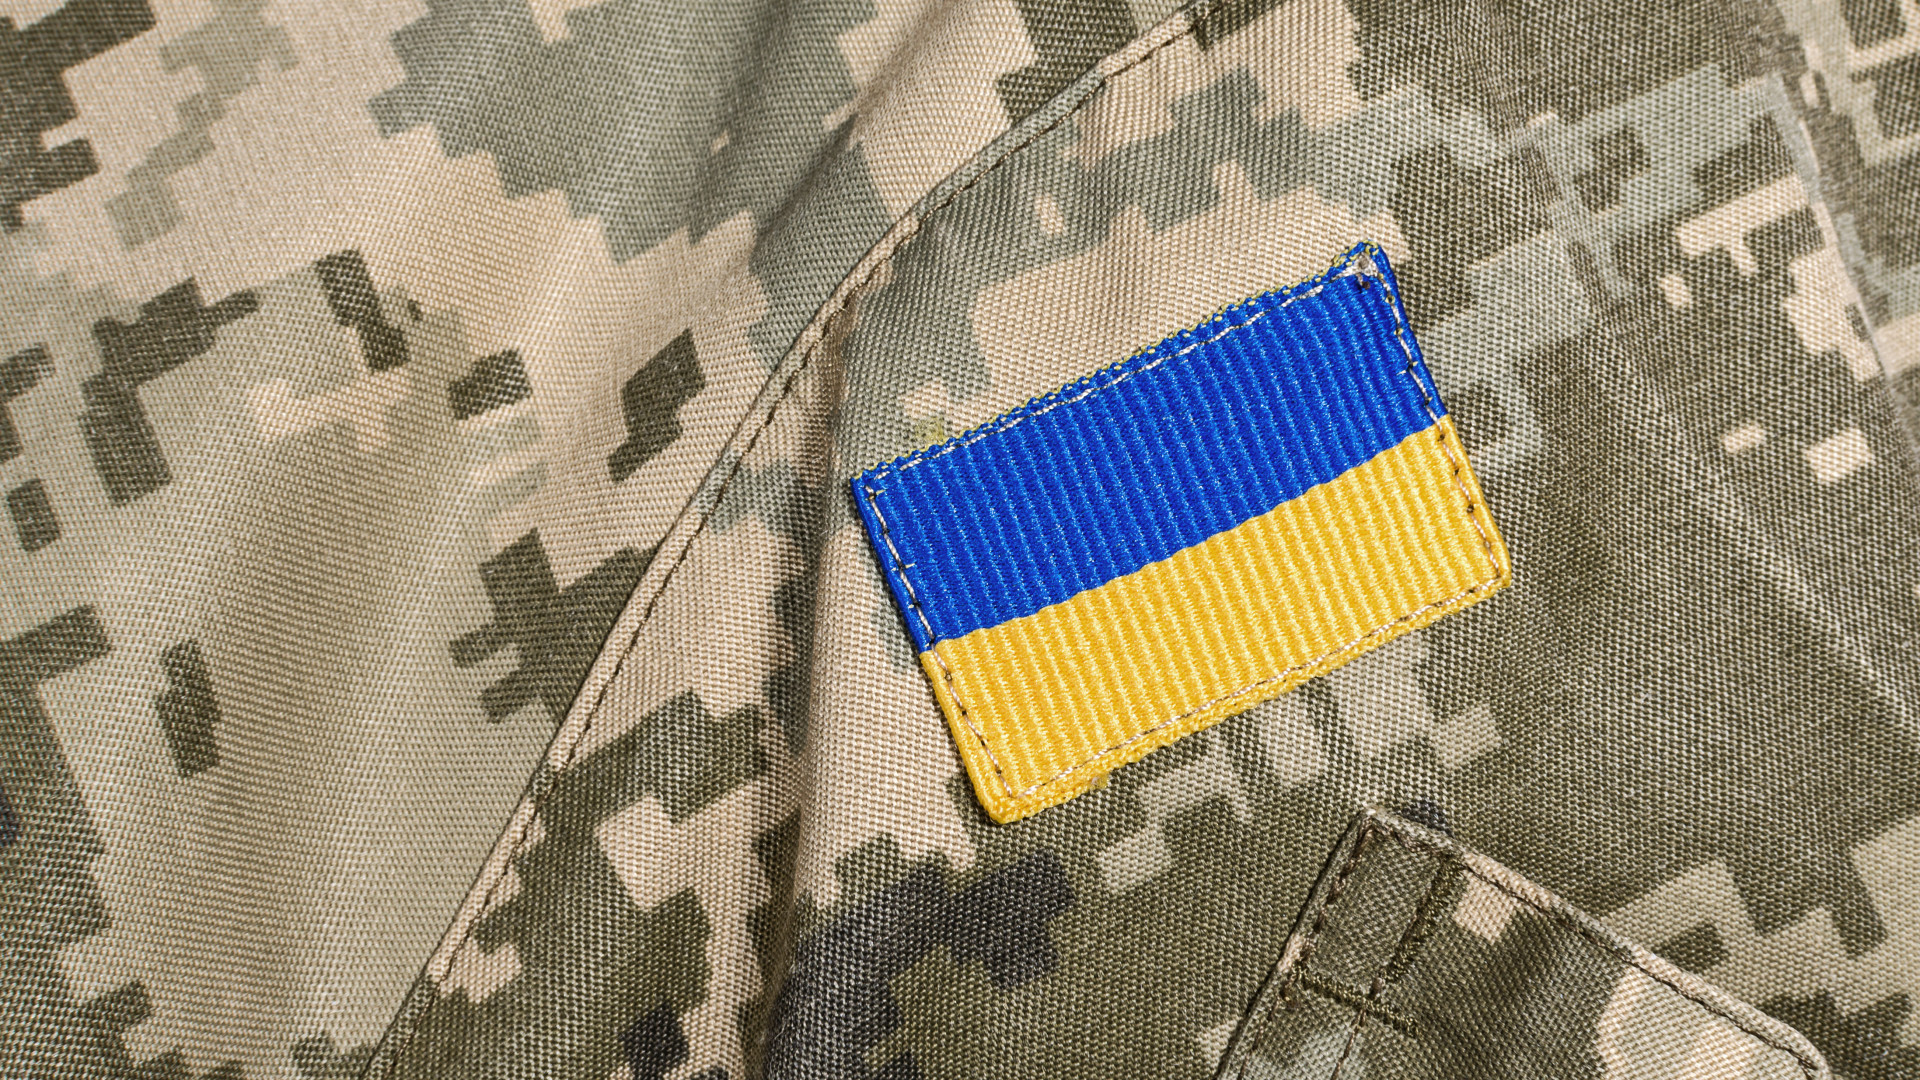 รัฐบาลฮังการียอมรับว่า: การป้องกันประเทศฝึกฝนผู้เชี่ยวชาญด้านการทหารของยูเครนจริงๆ